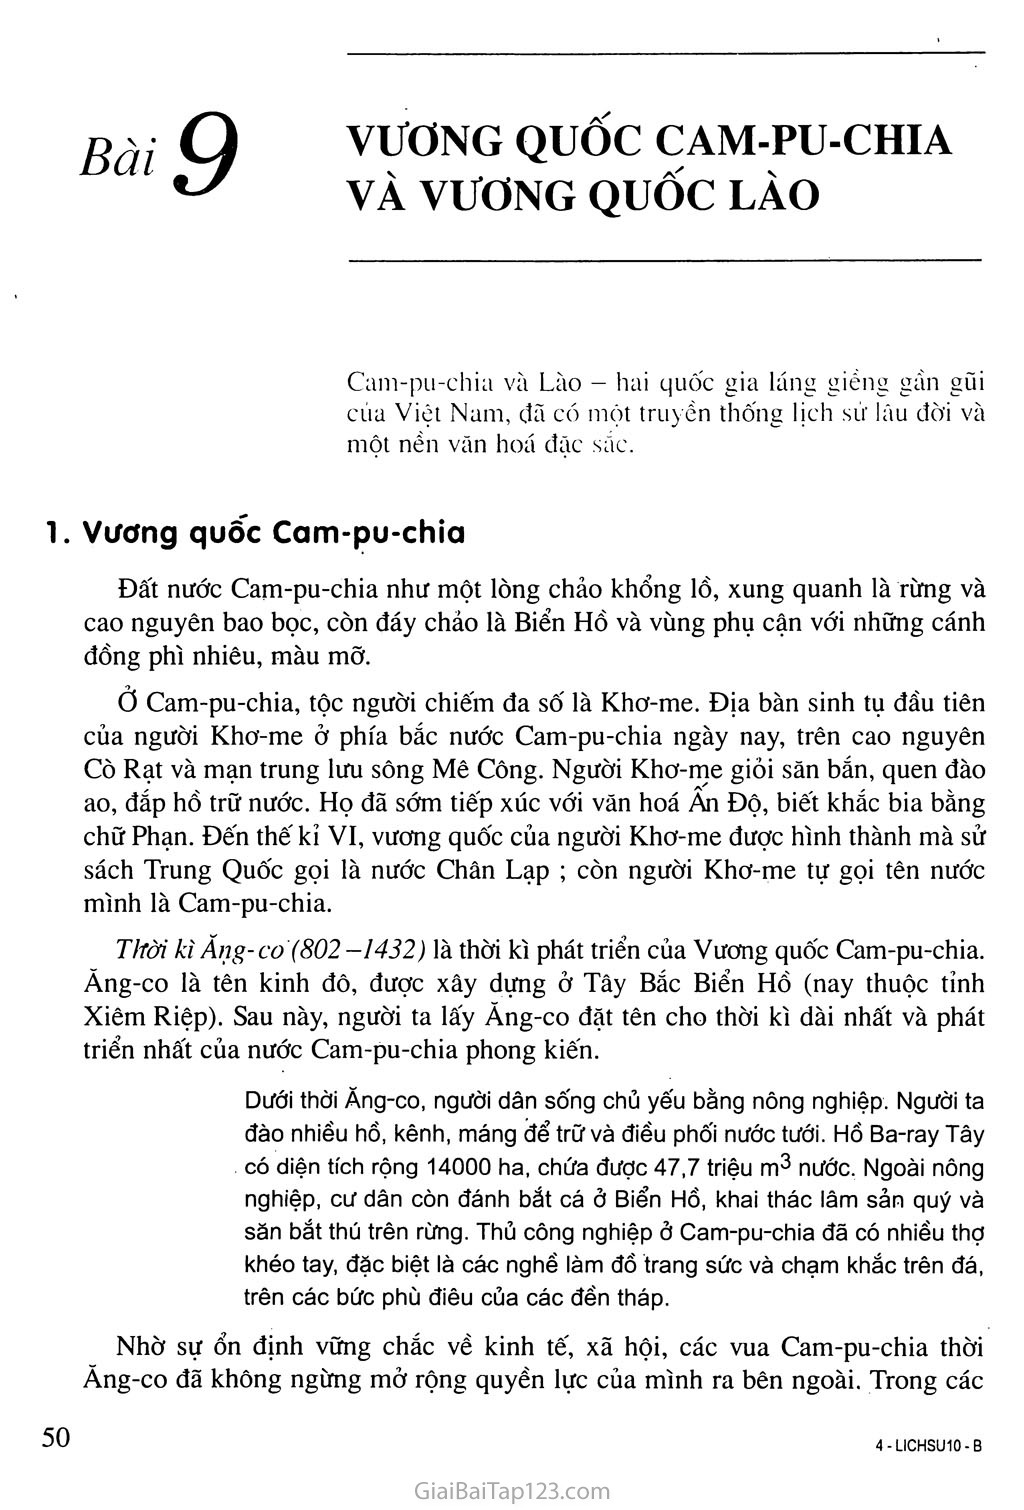 Bài 9: Vương quốc Cam-pu-chia và Vương quốc Lào trang 1